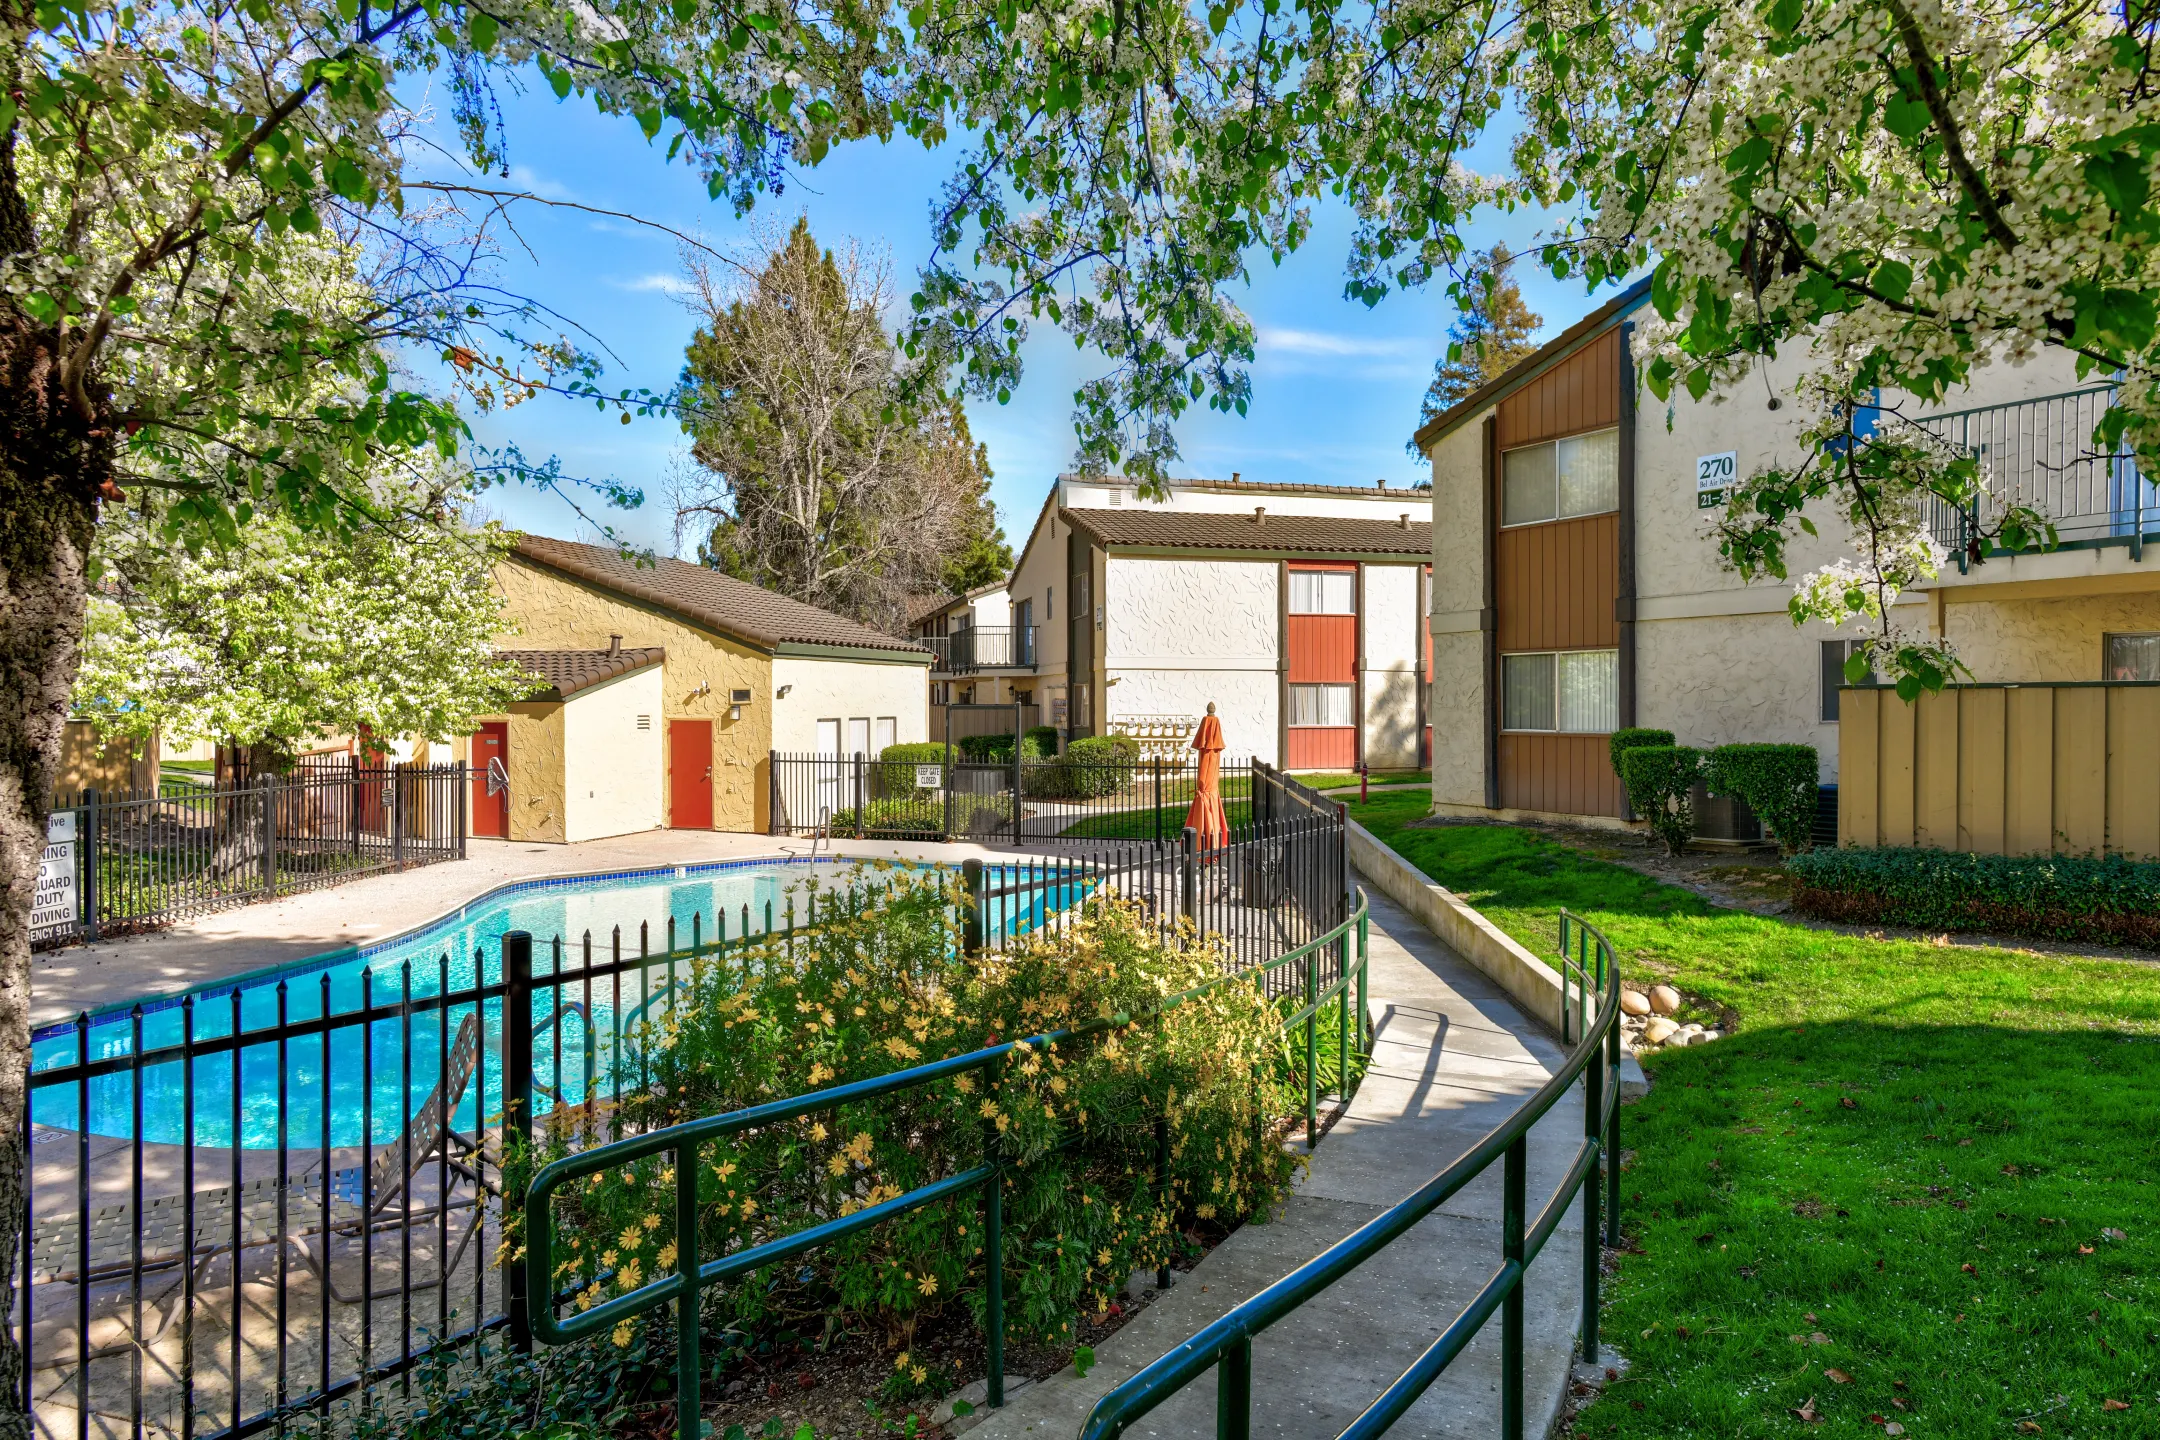 Building - Creekside Gardens Apartments - Vacaville, CA